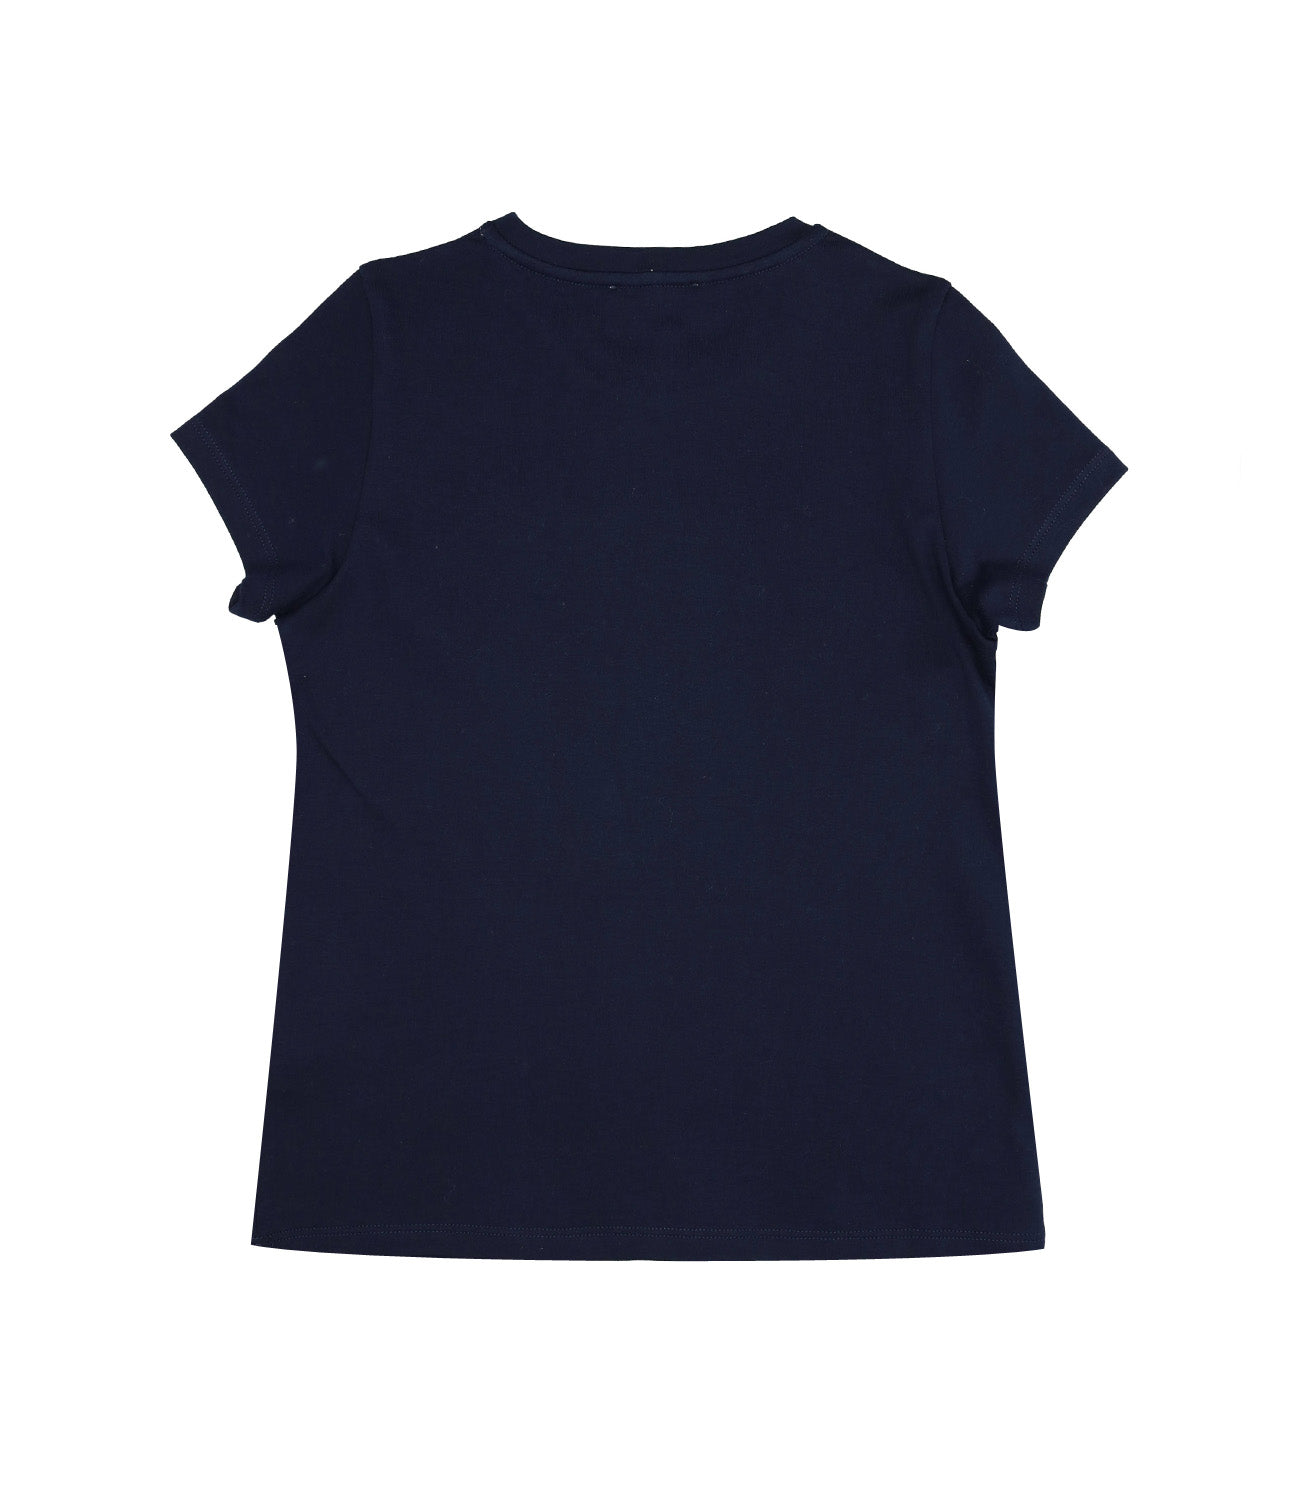 Lanvin Kids | Navy Blue T-Shirt